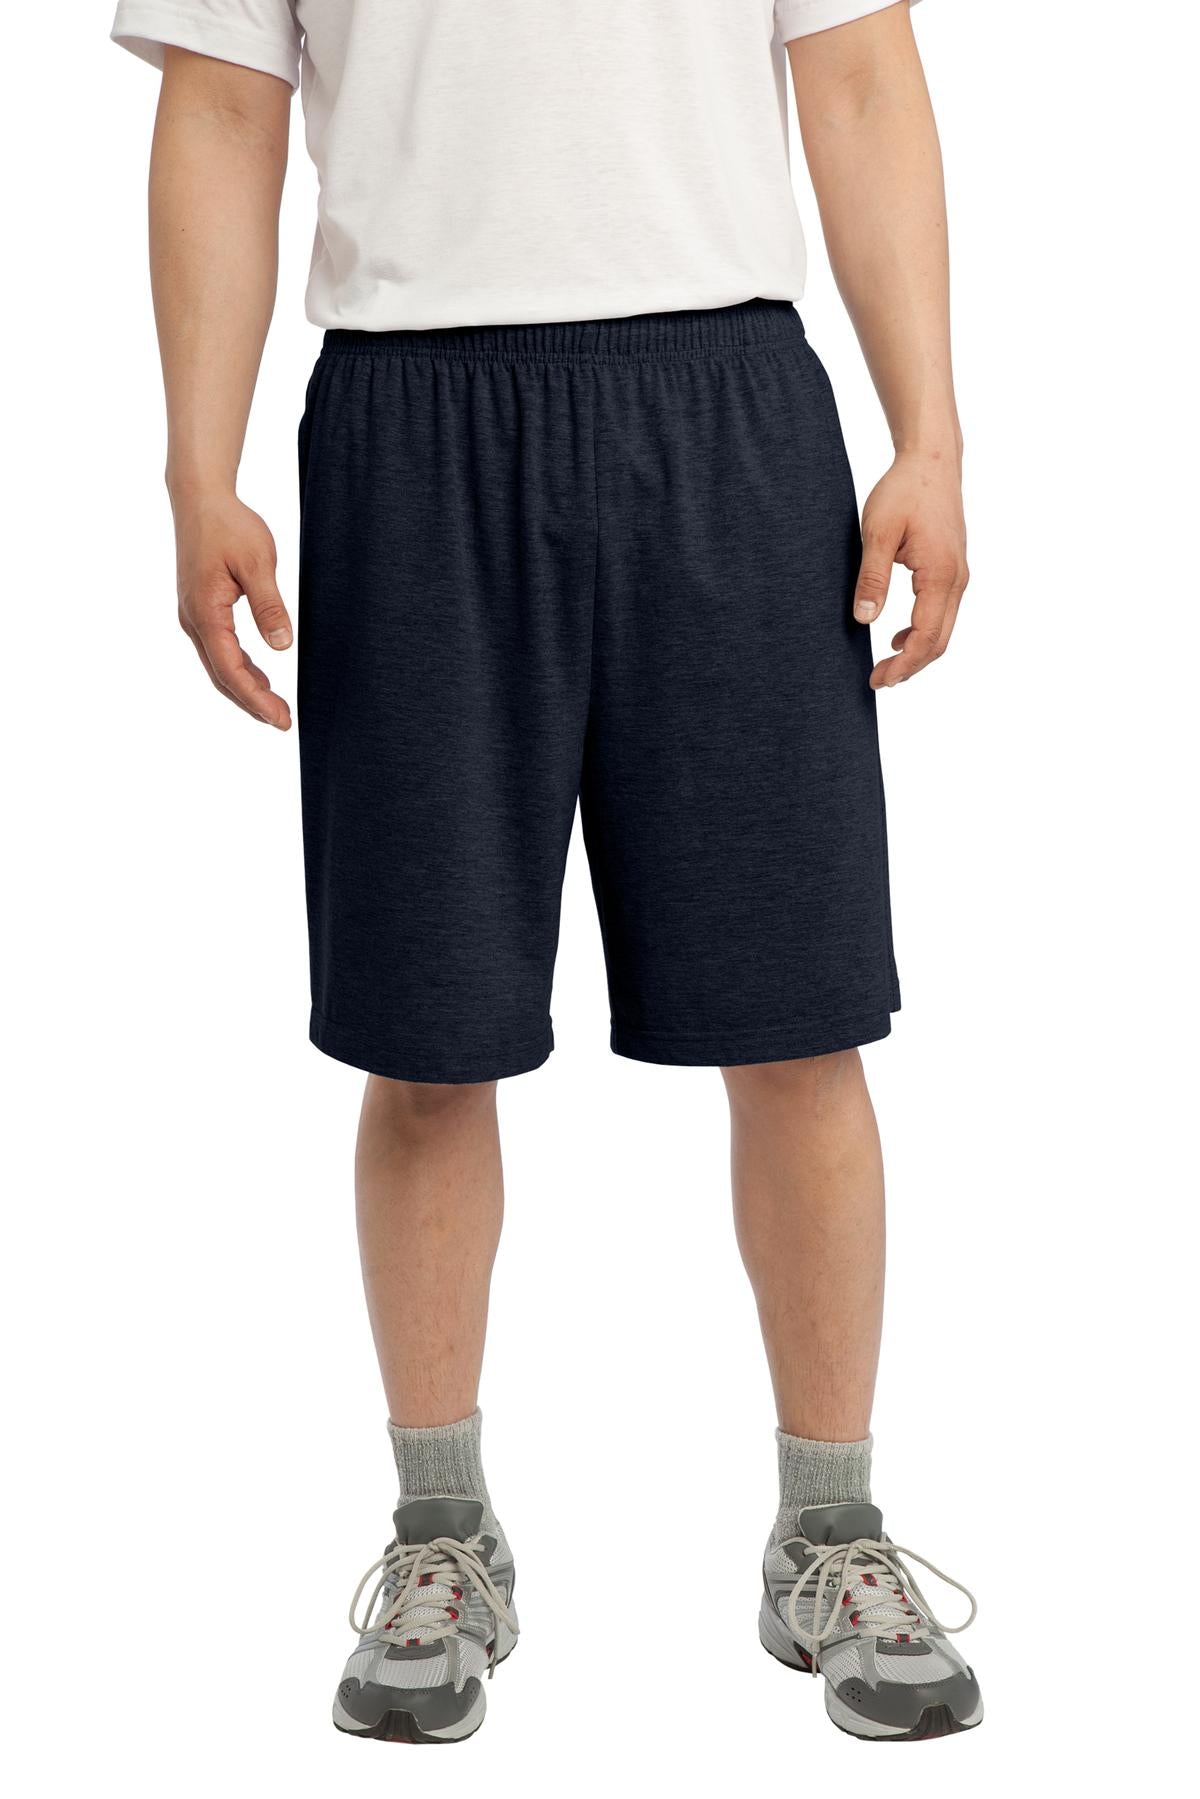 Sport-Tek® Jersey Knit Short with Pockets. ST310